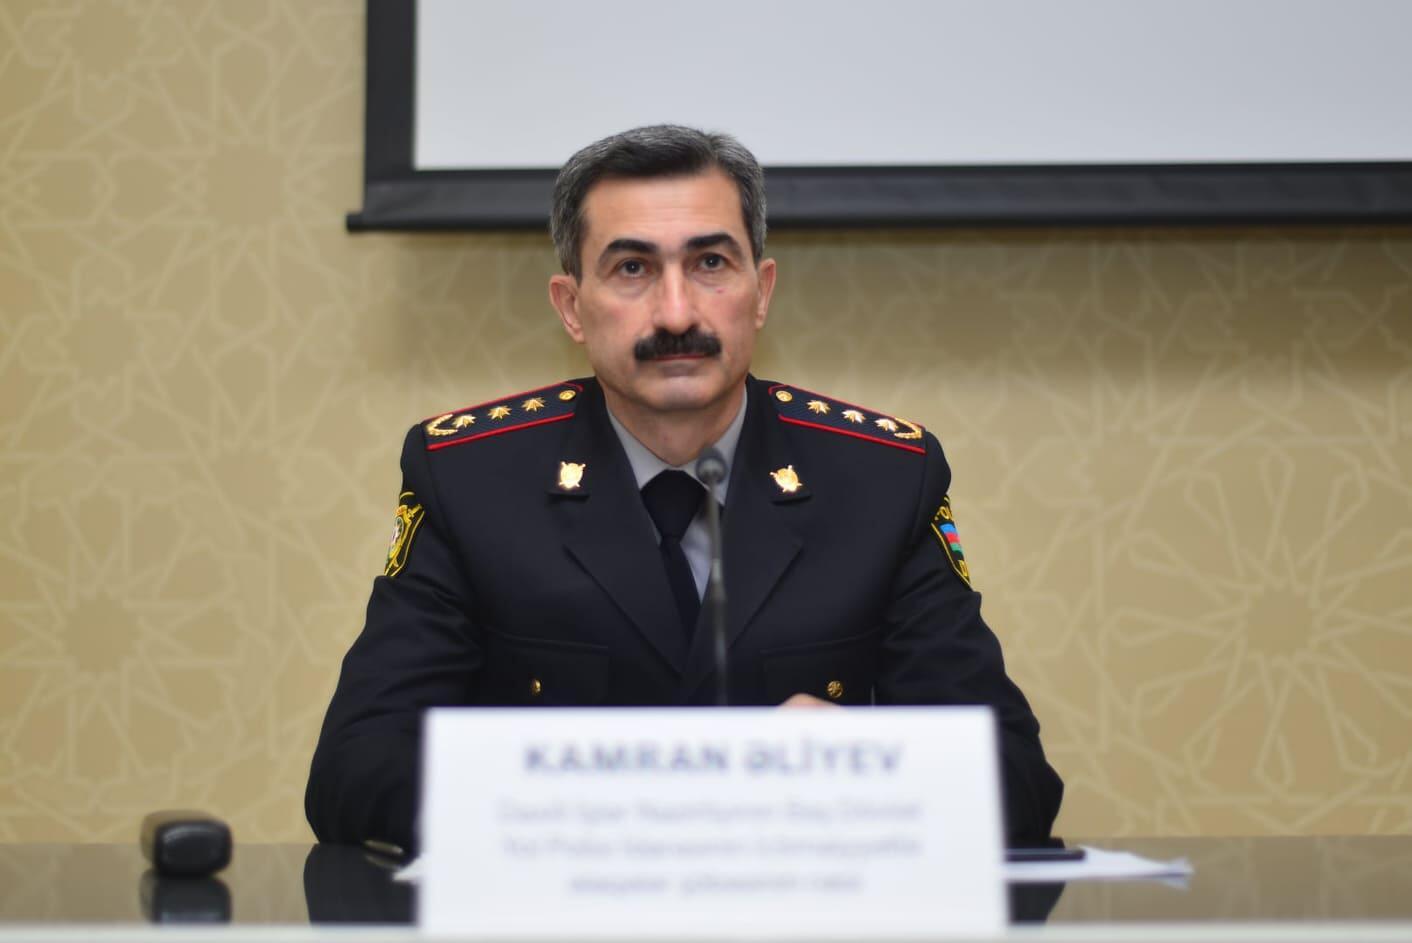 Kamran Əliyev 